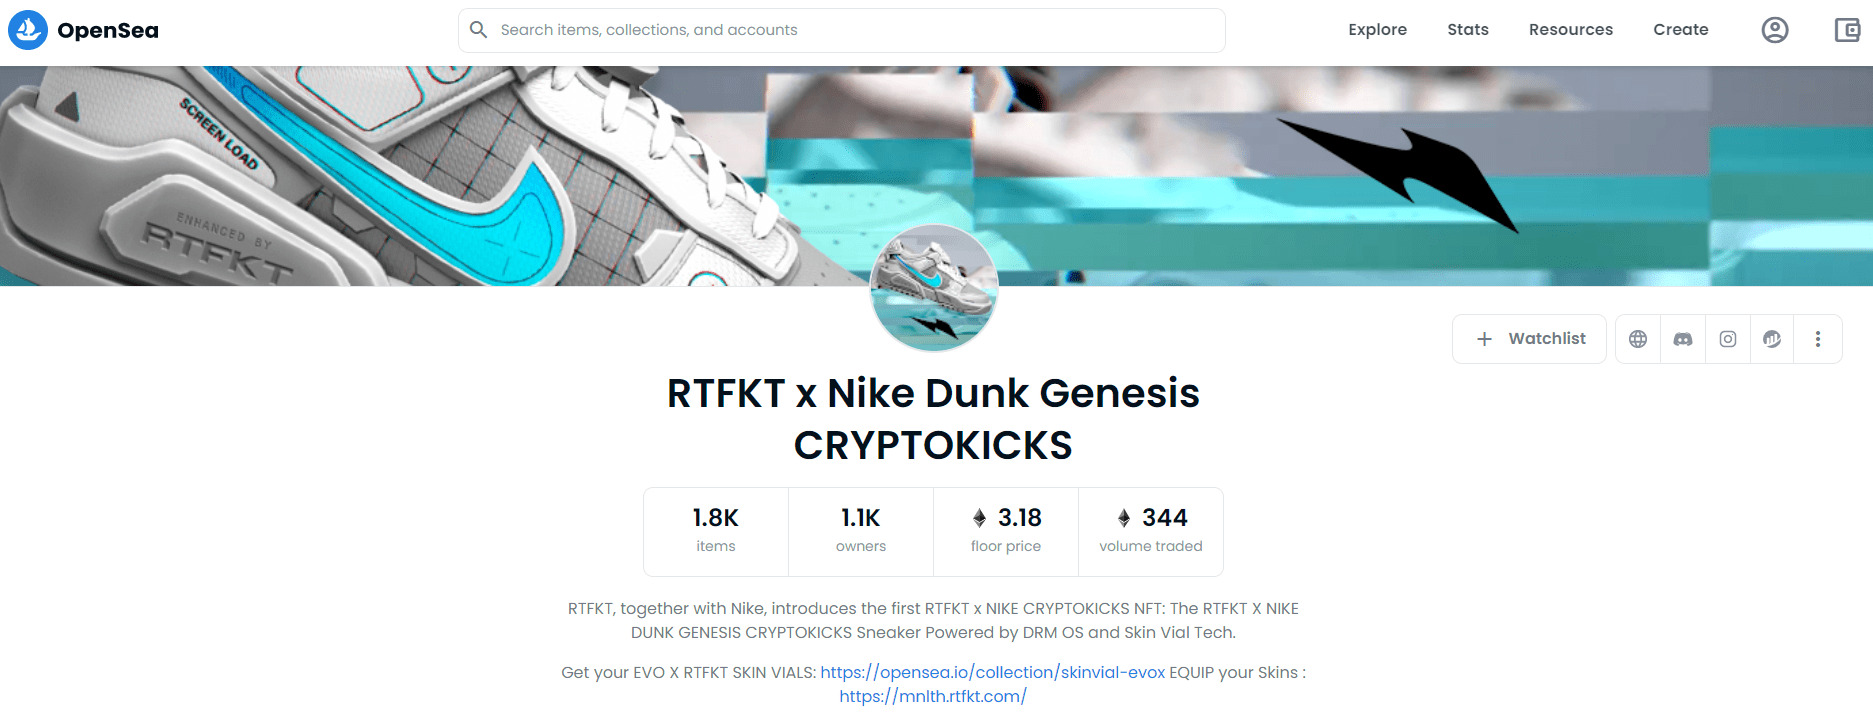 Nike Ra Mắt Bộ Sưu Tập Nft Đầu Tiên Được Xây Dựng Trên Blockchain Ethereum